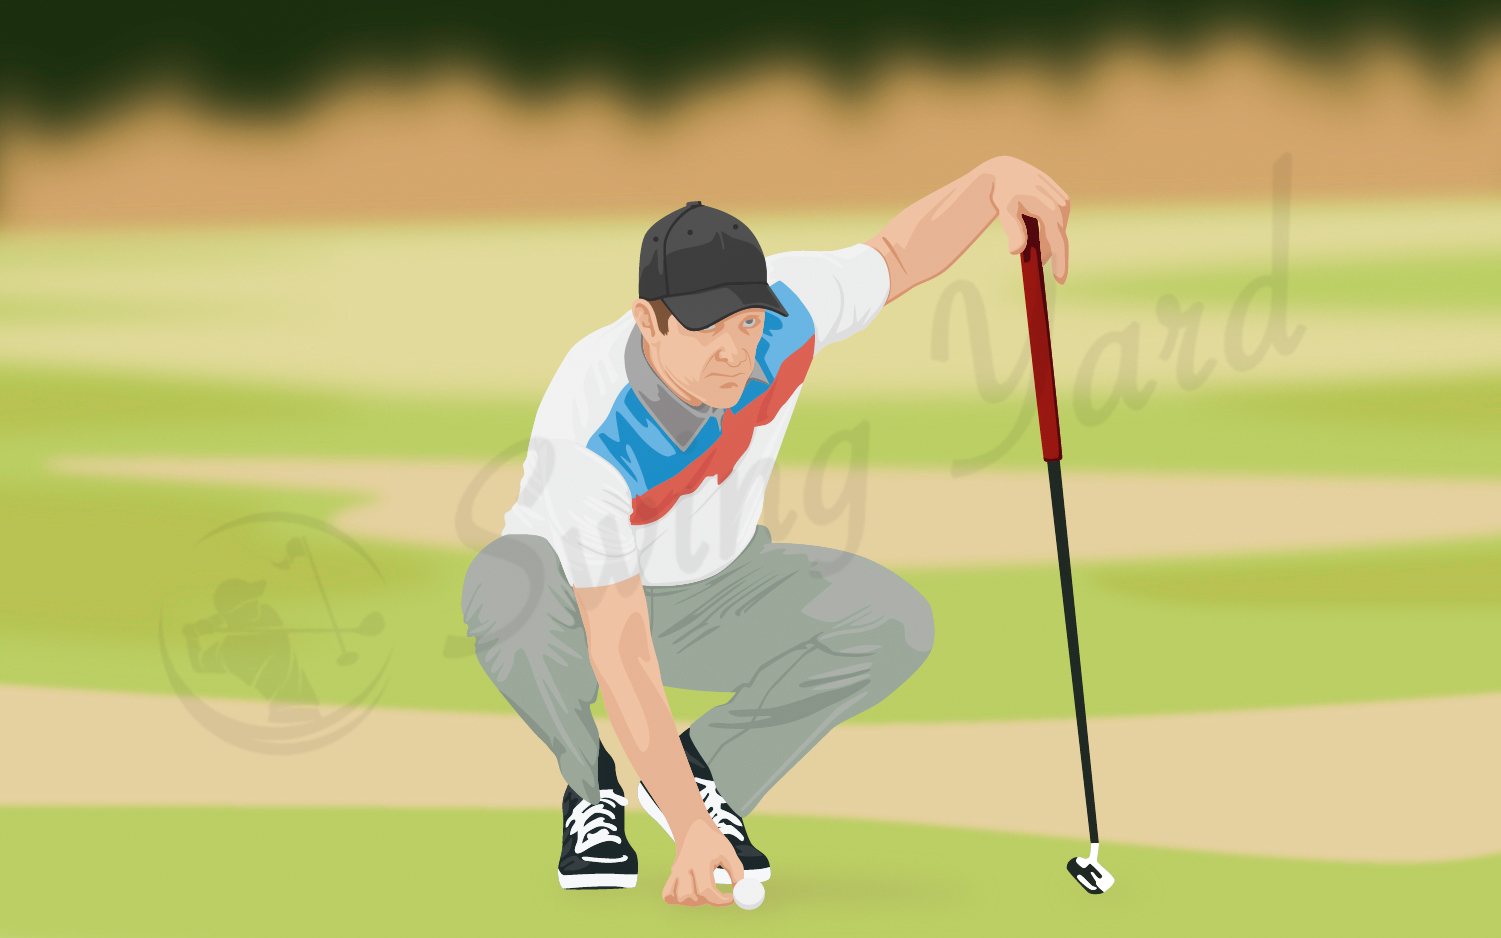 A golfer lining up a long lag putt